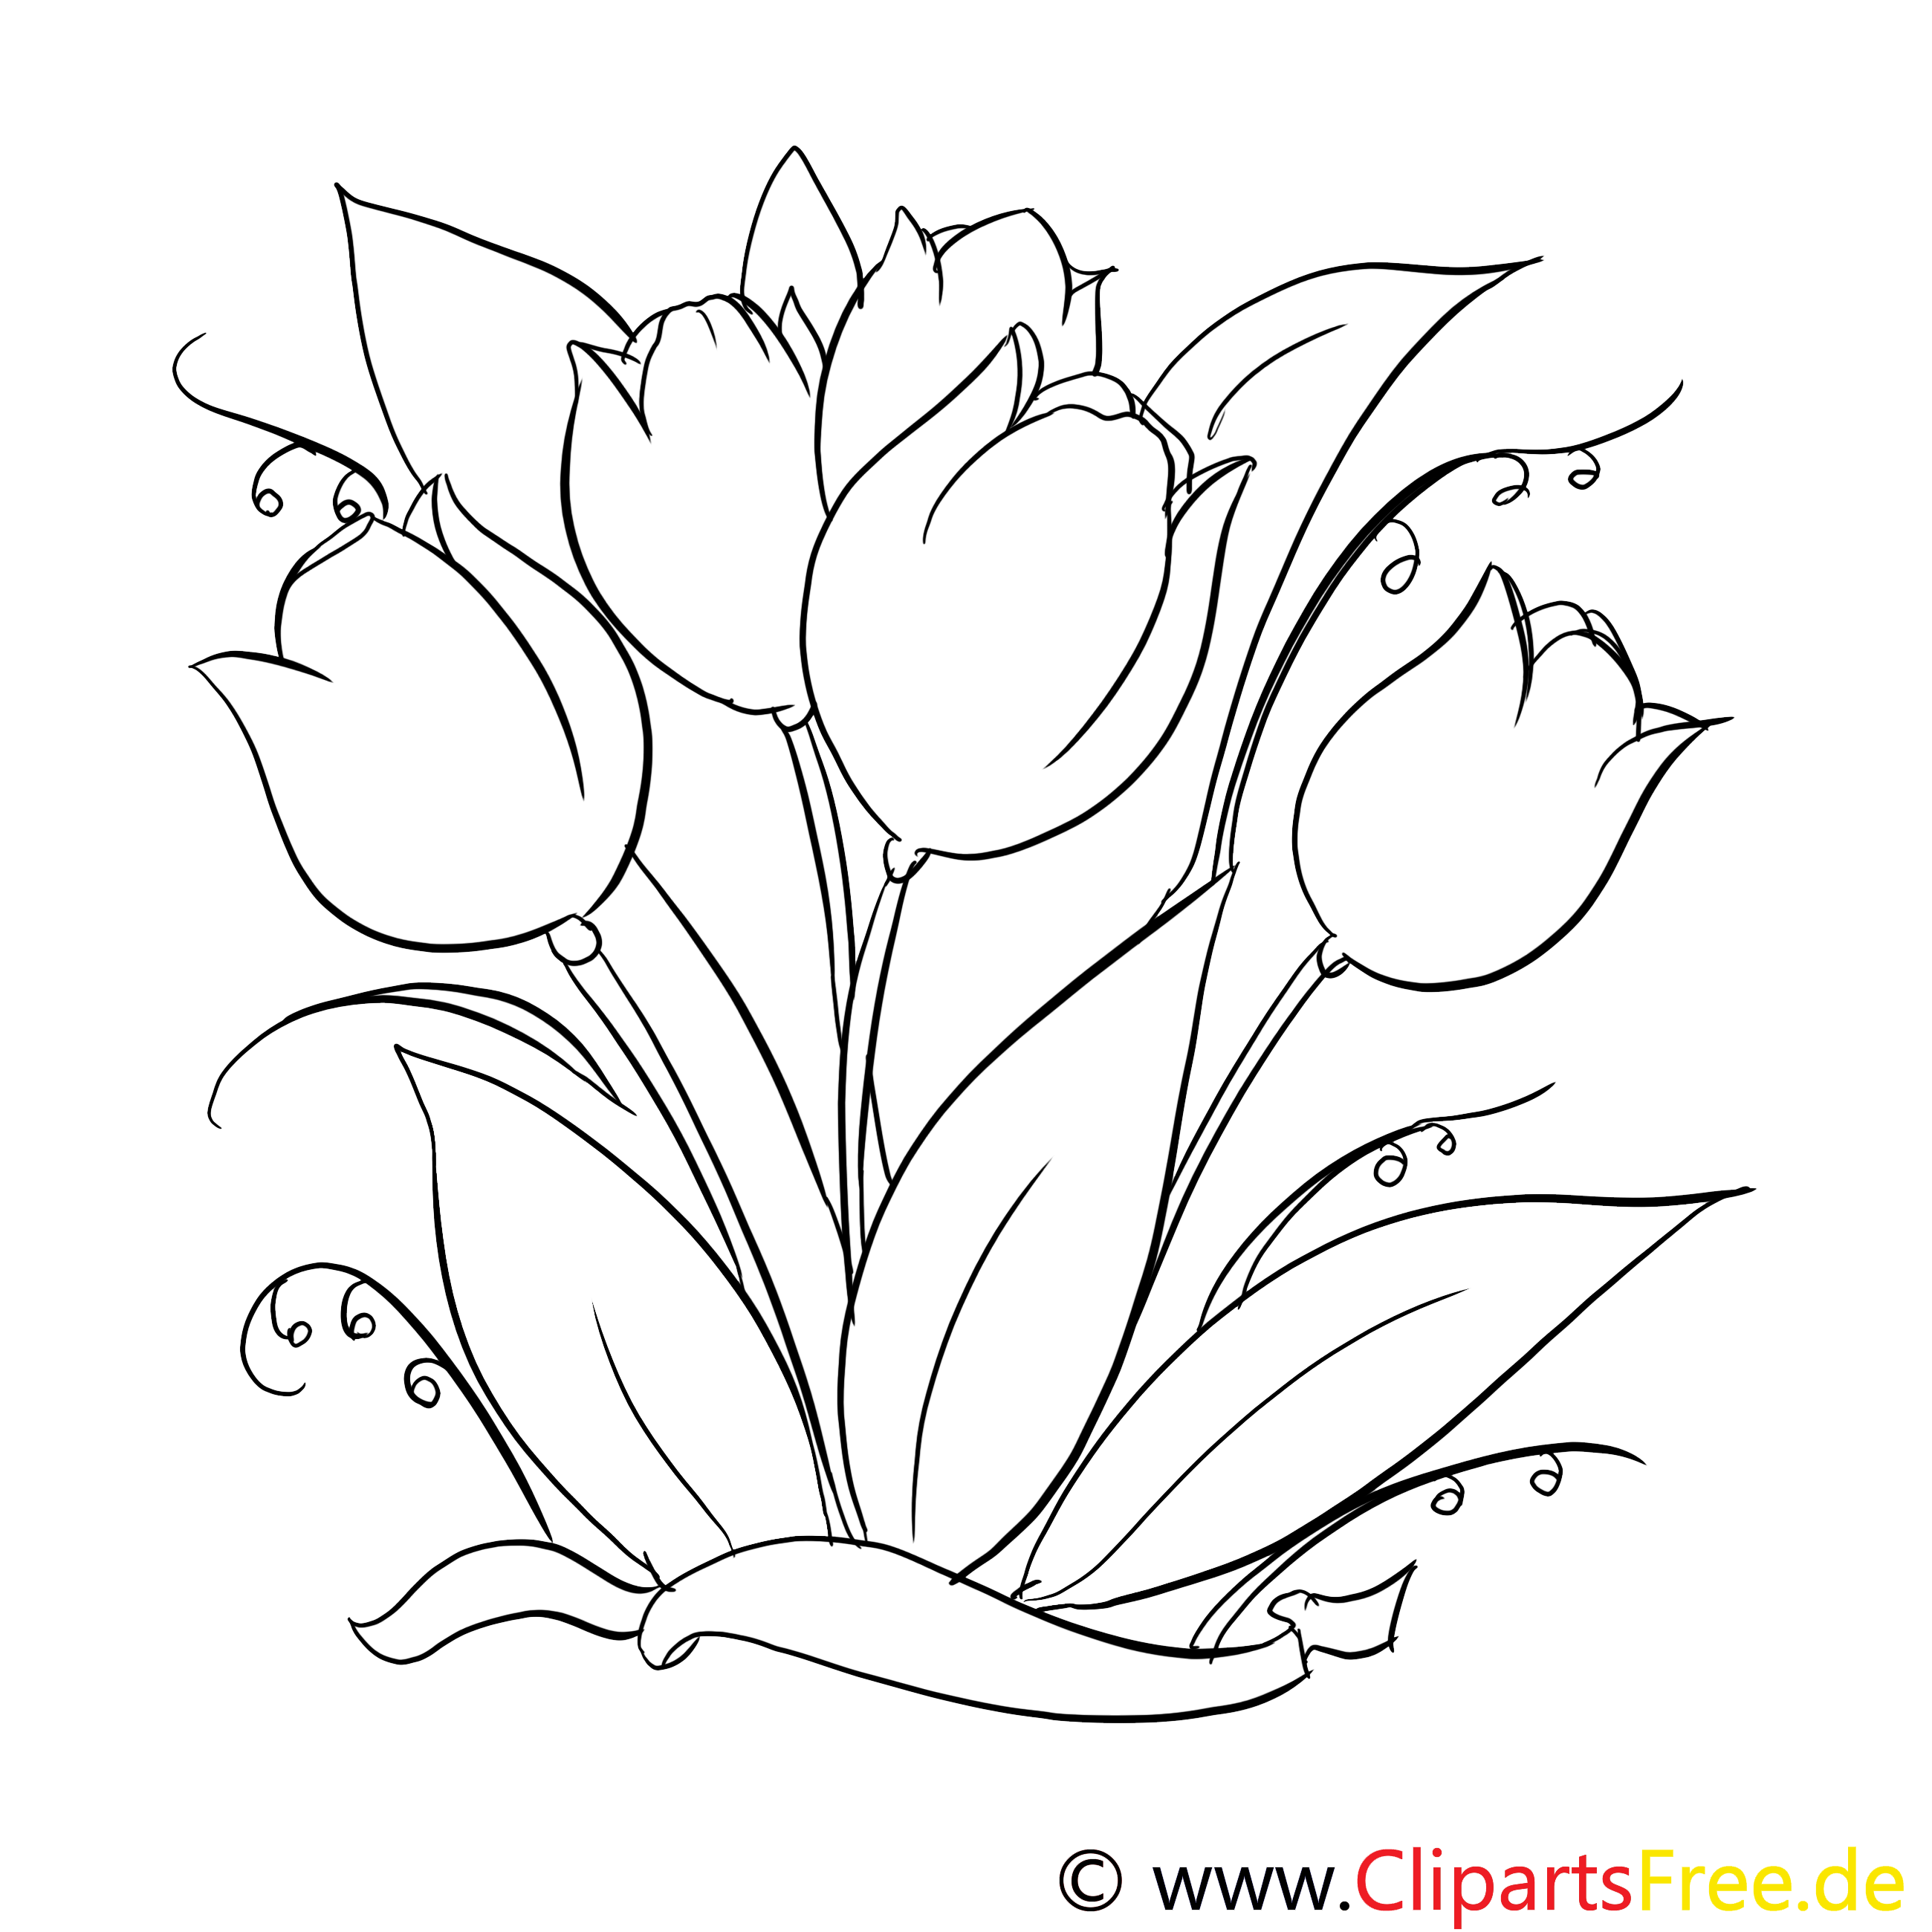 Tulipes images – Fleurs gratuit à imprimer